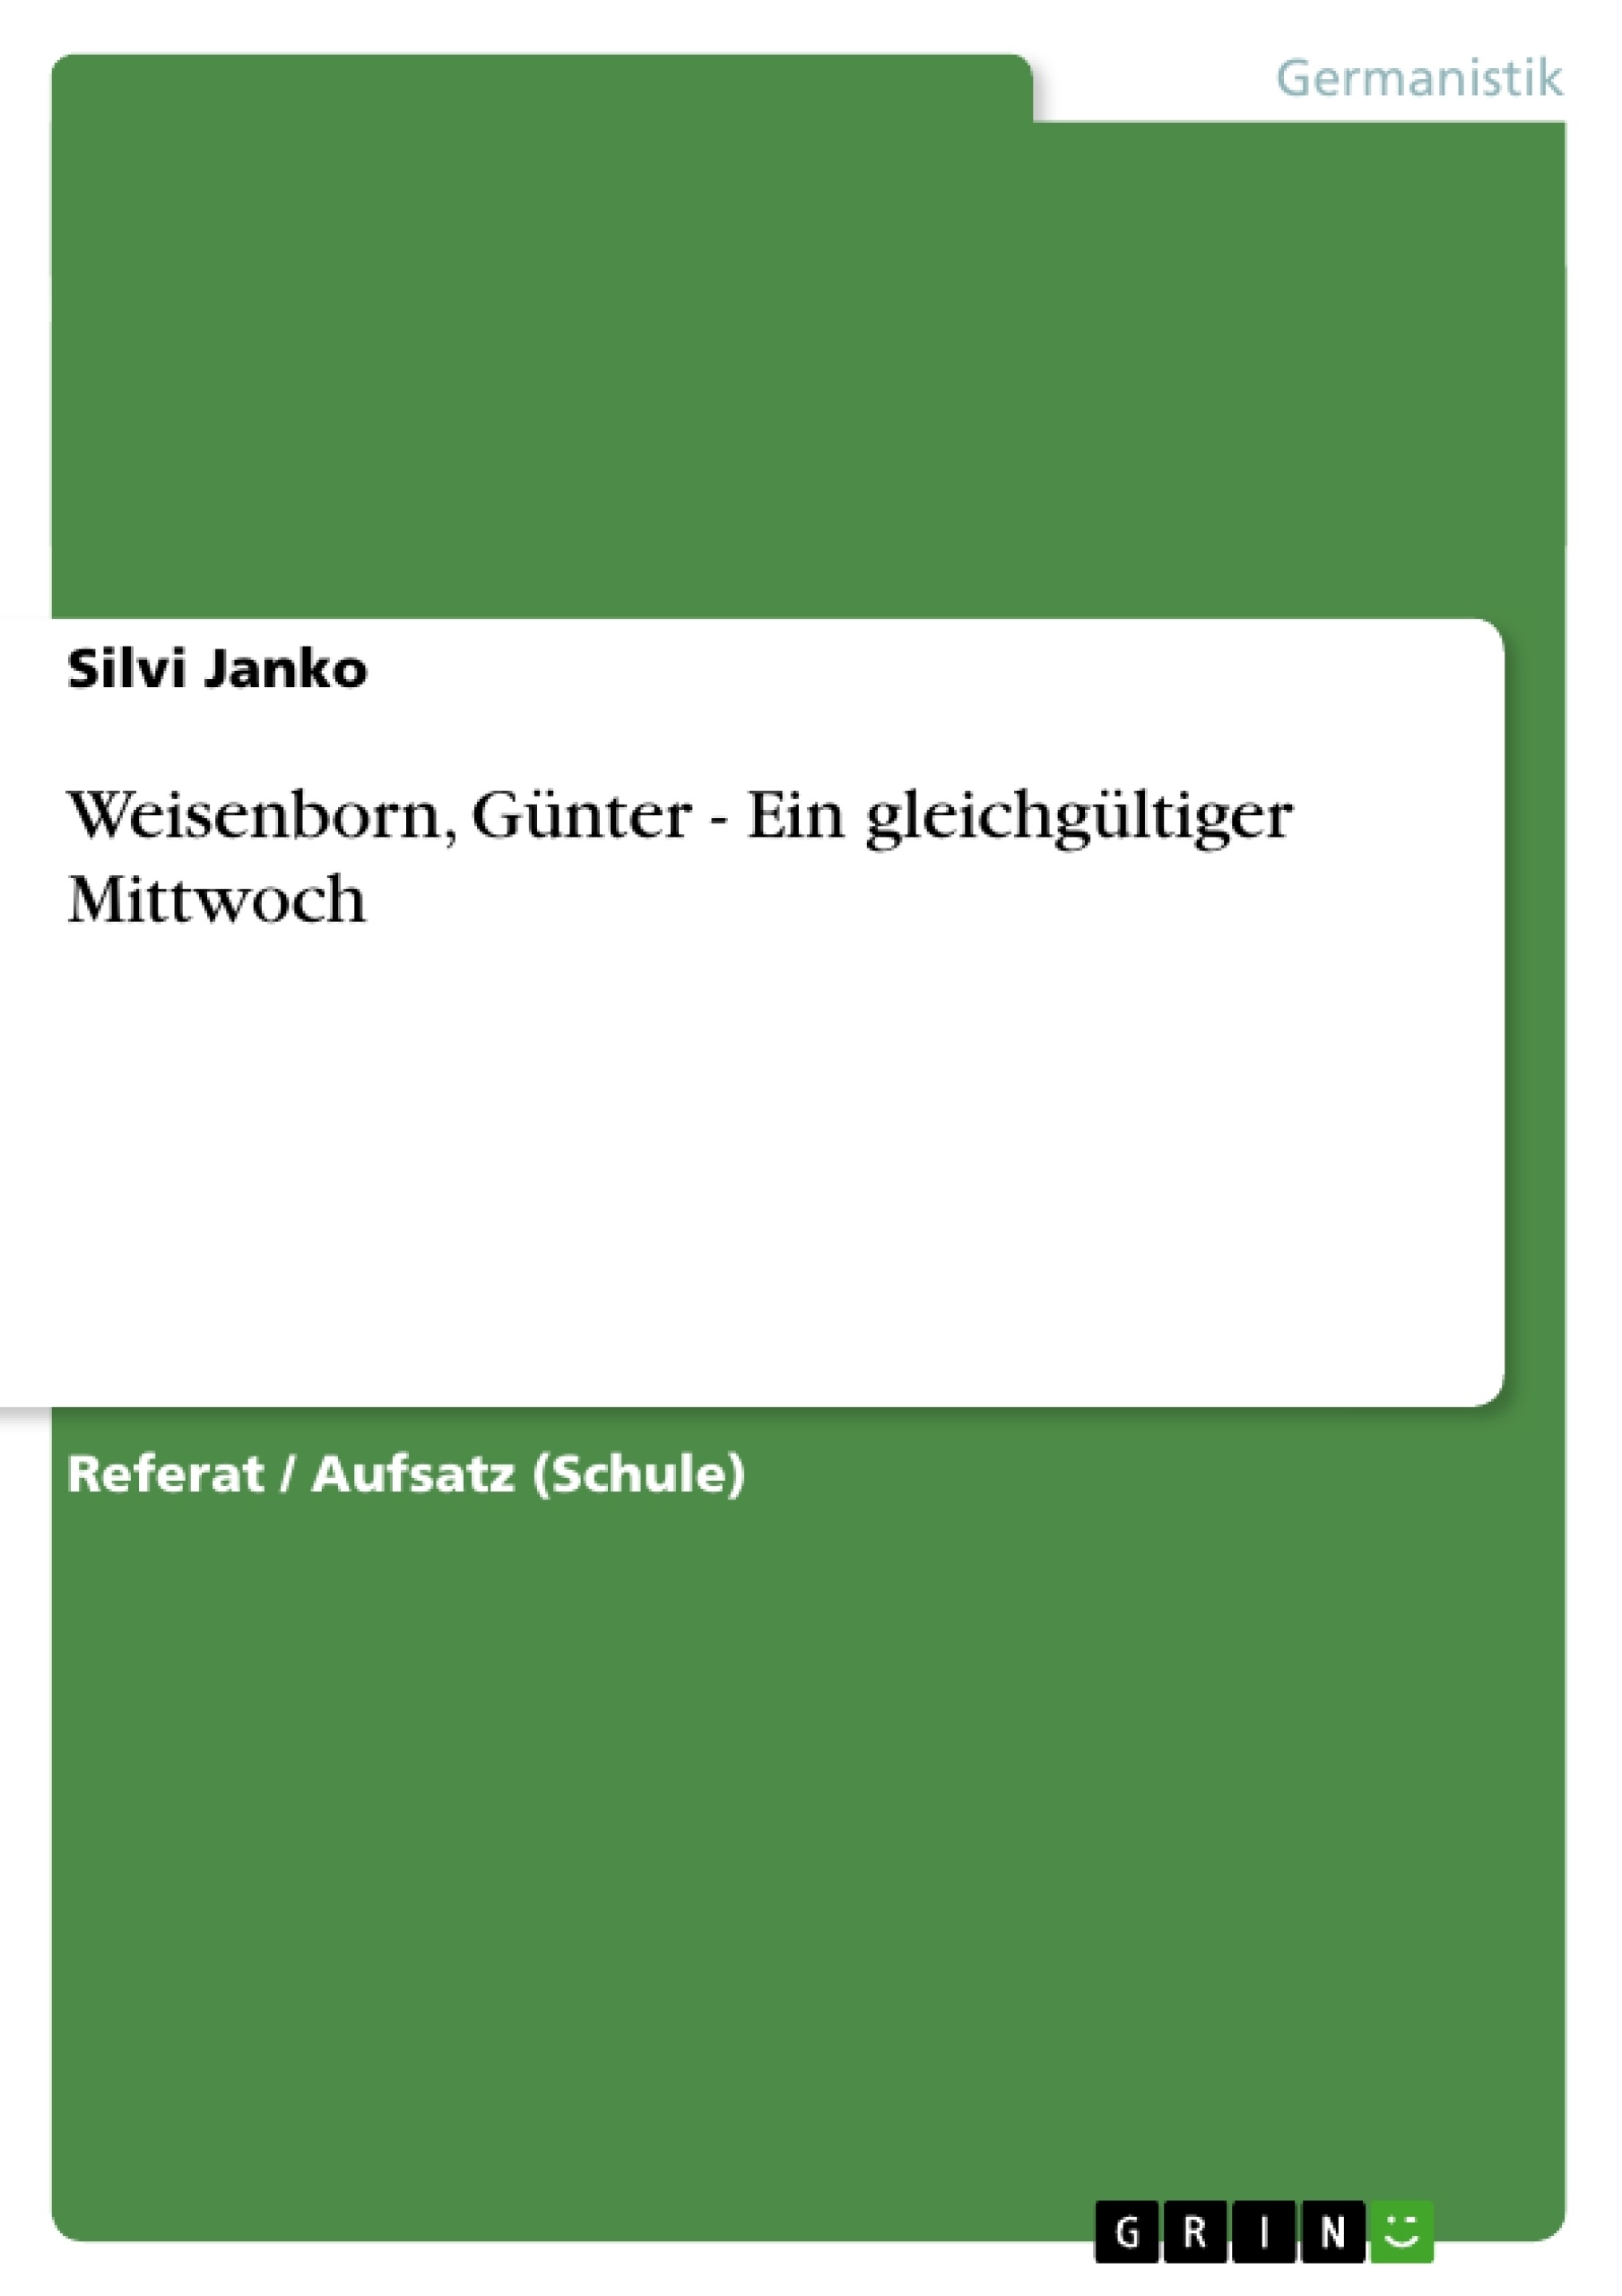 Title: Weisenborn, Günter - Ein gleichgültiger Mittwoch